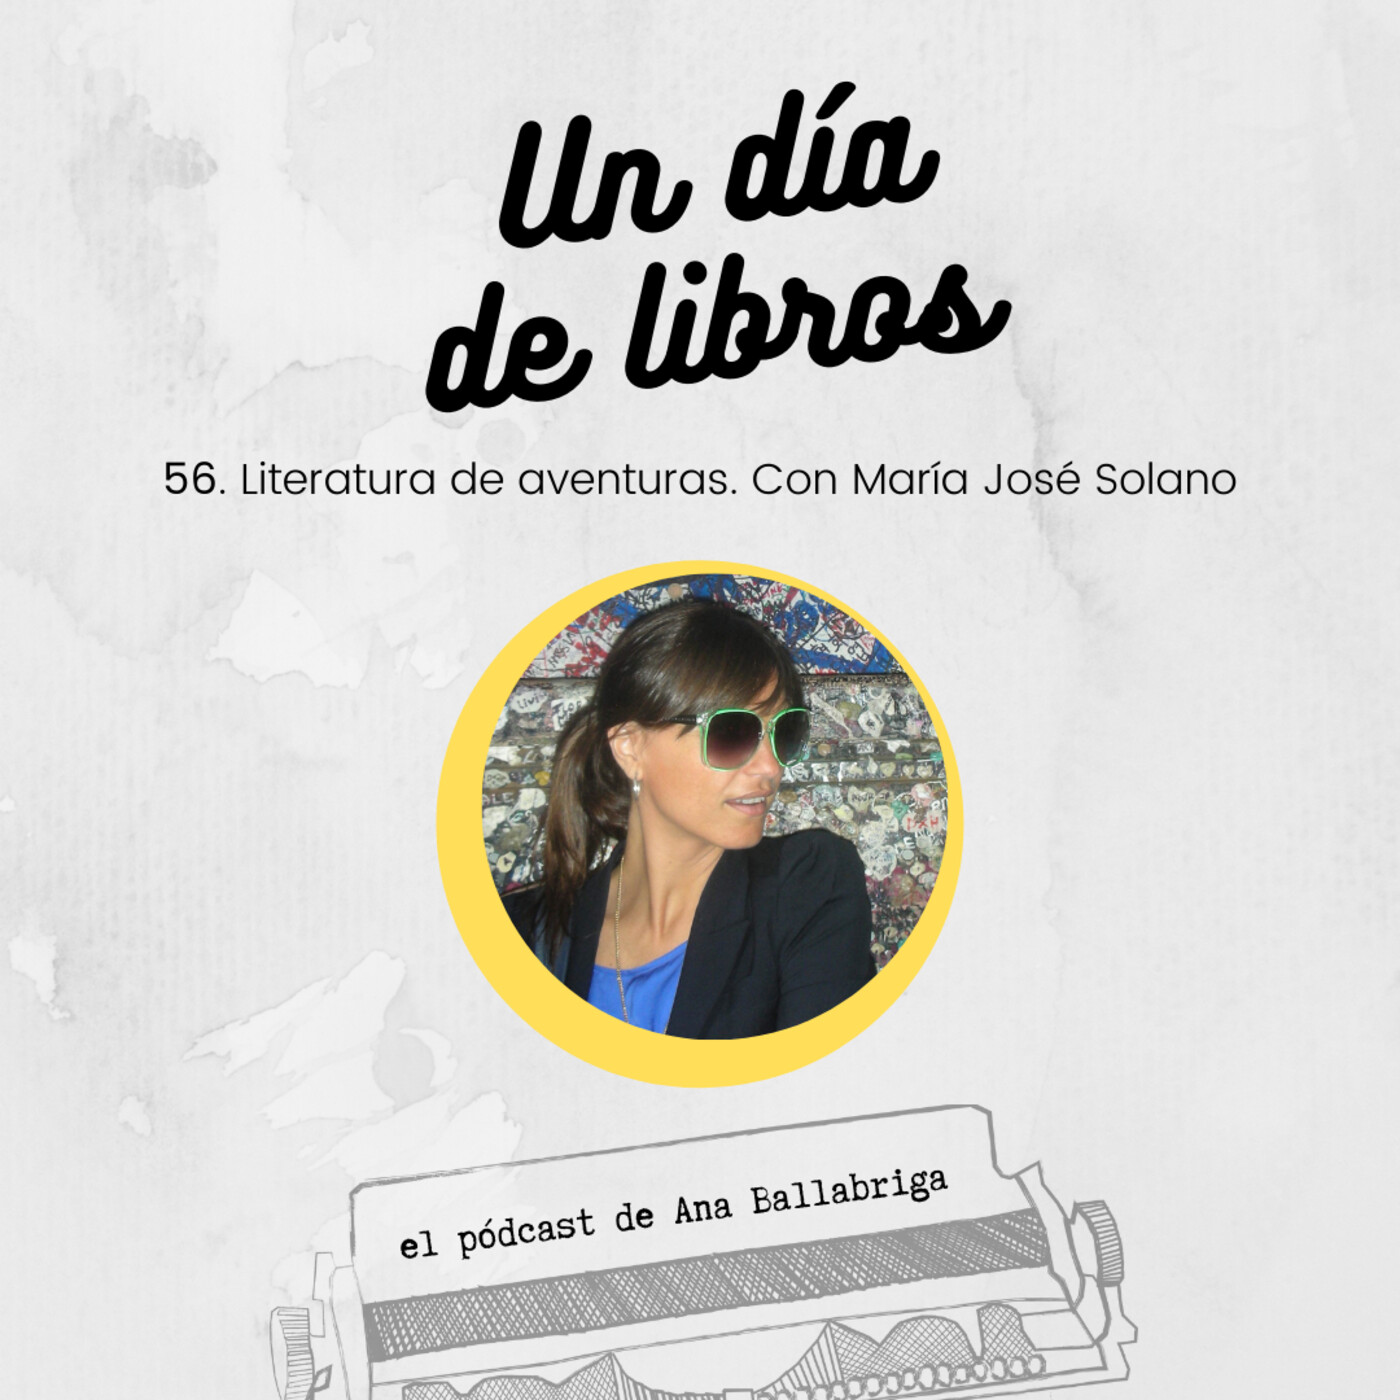 56. Literatura de aventuras. Con María José Solano